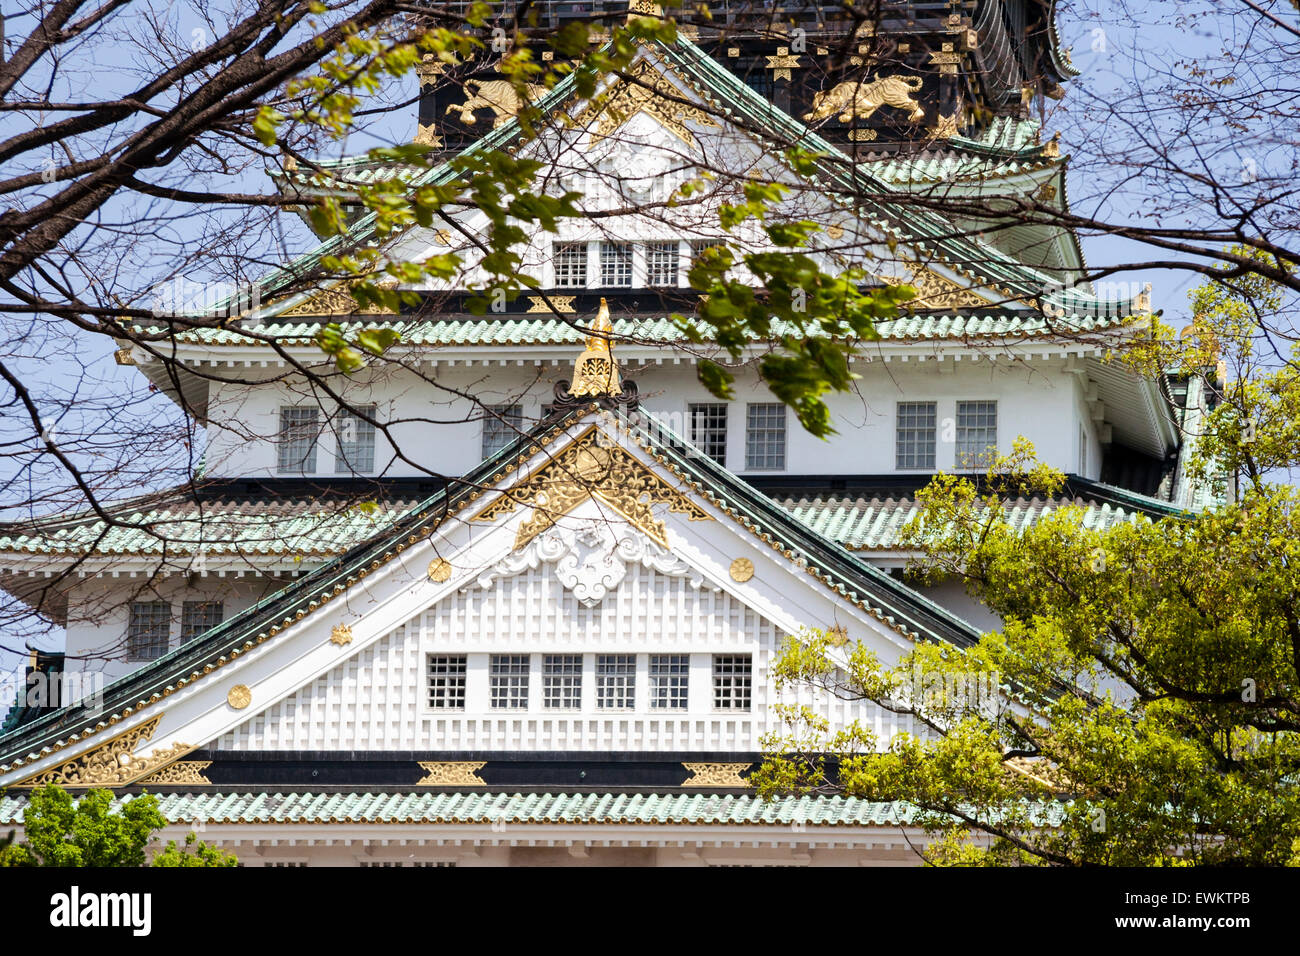 Il castello di Osaka. Close up shot teleobiettivo della parte superiore del tenshu, il castello di mantenere, sullo sfondo di un cielo blu chiaro. Torre di guardia sulla sommità di mantenere. Foto Stock